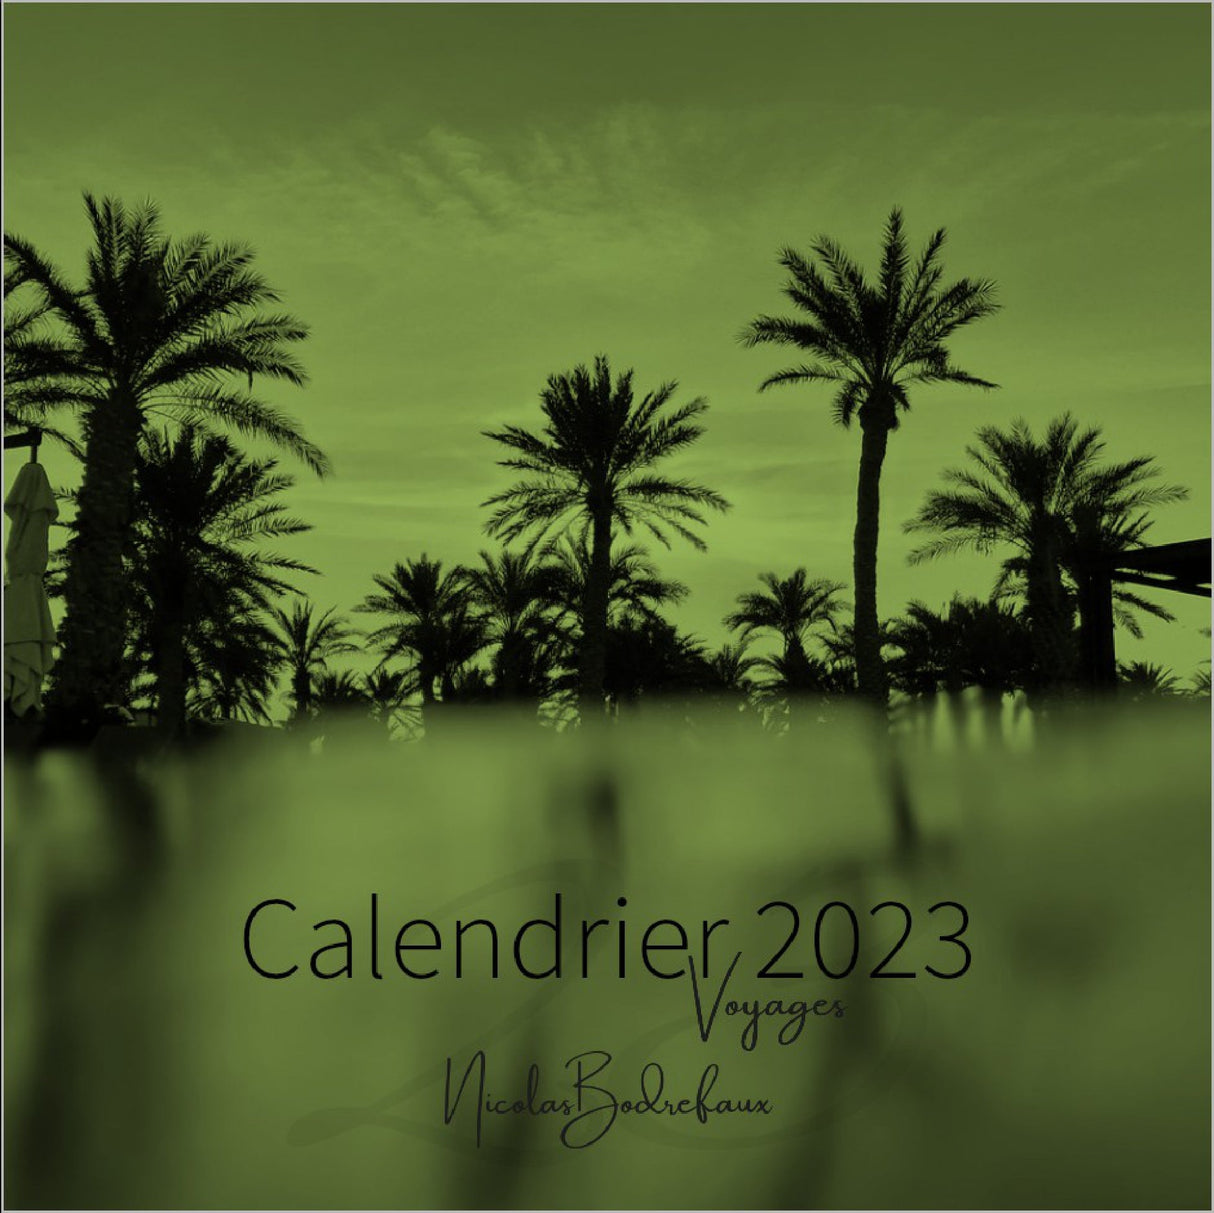 Calendriers - Thème 2023 : Voyages